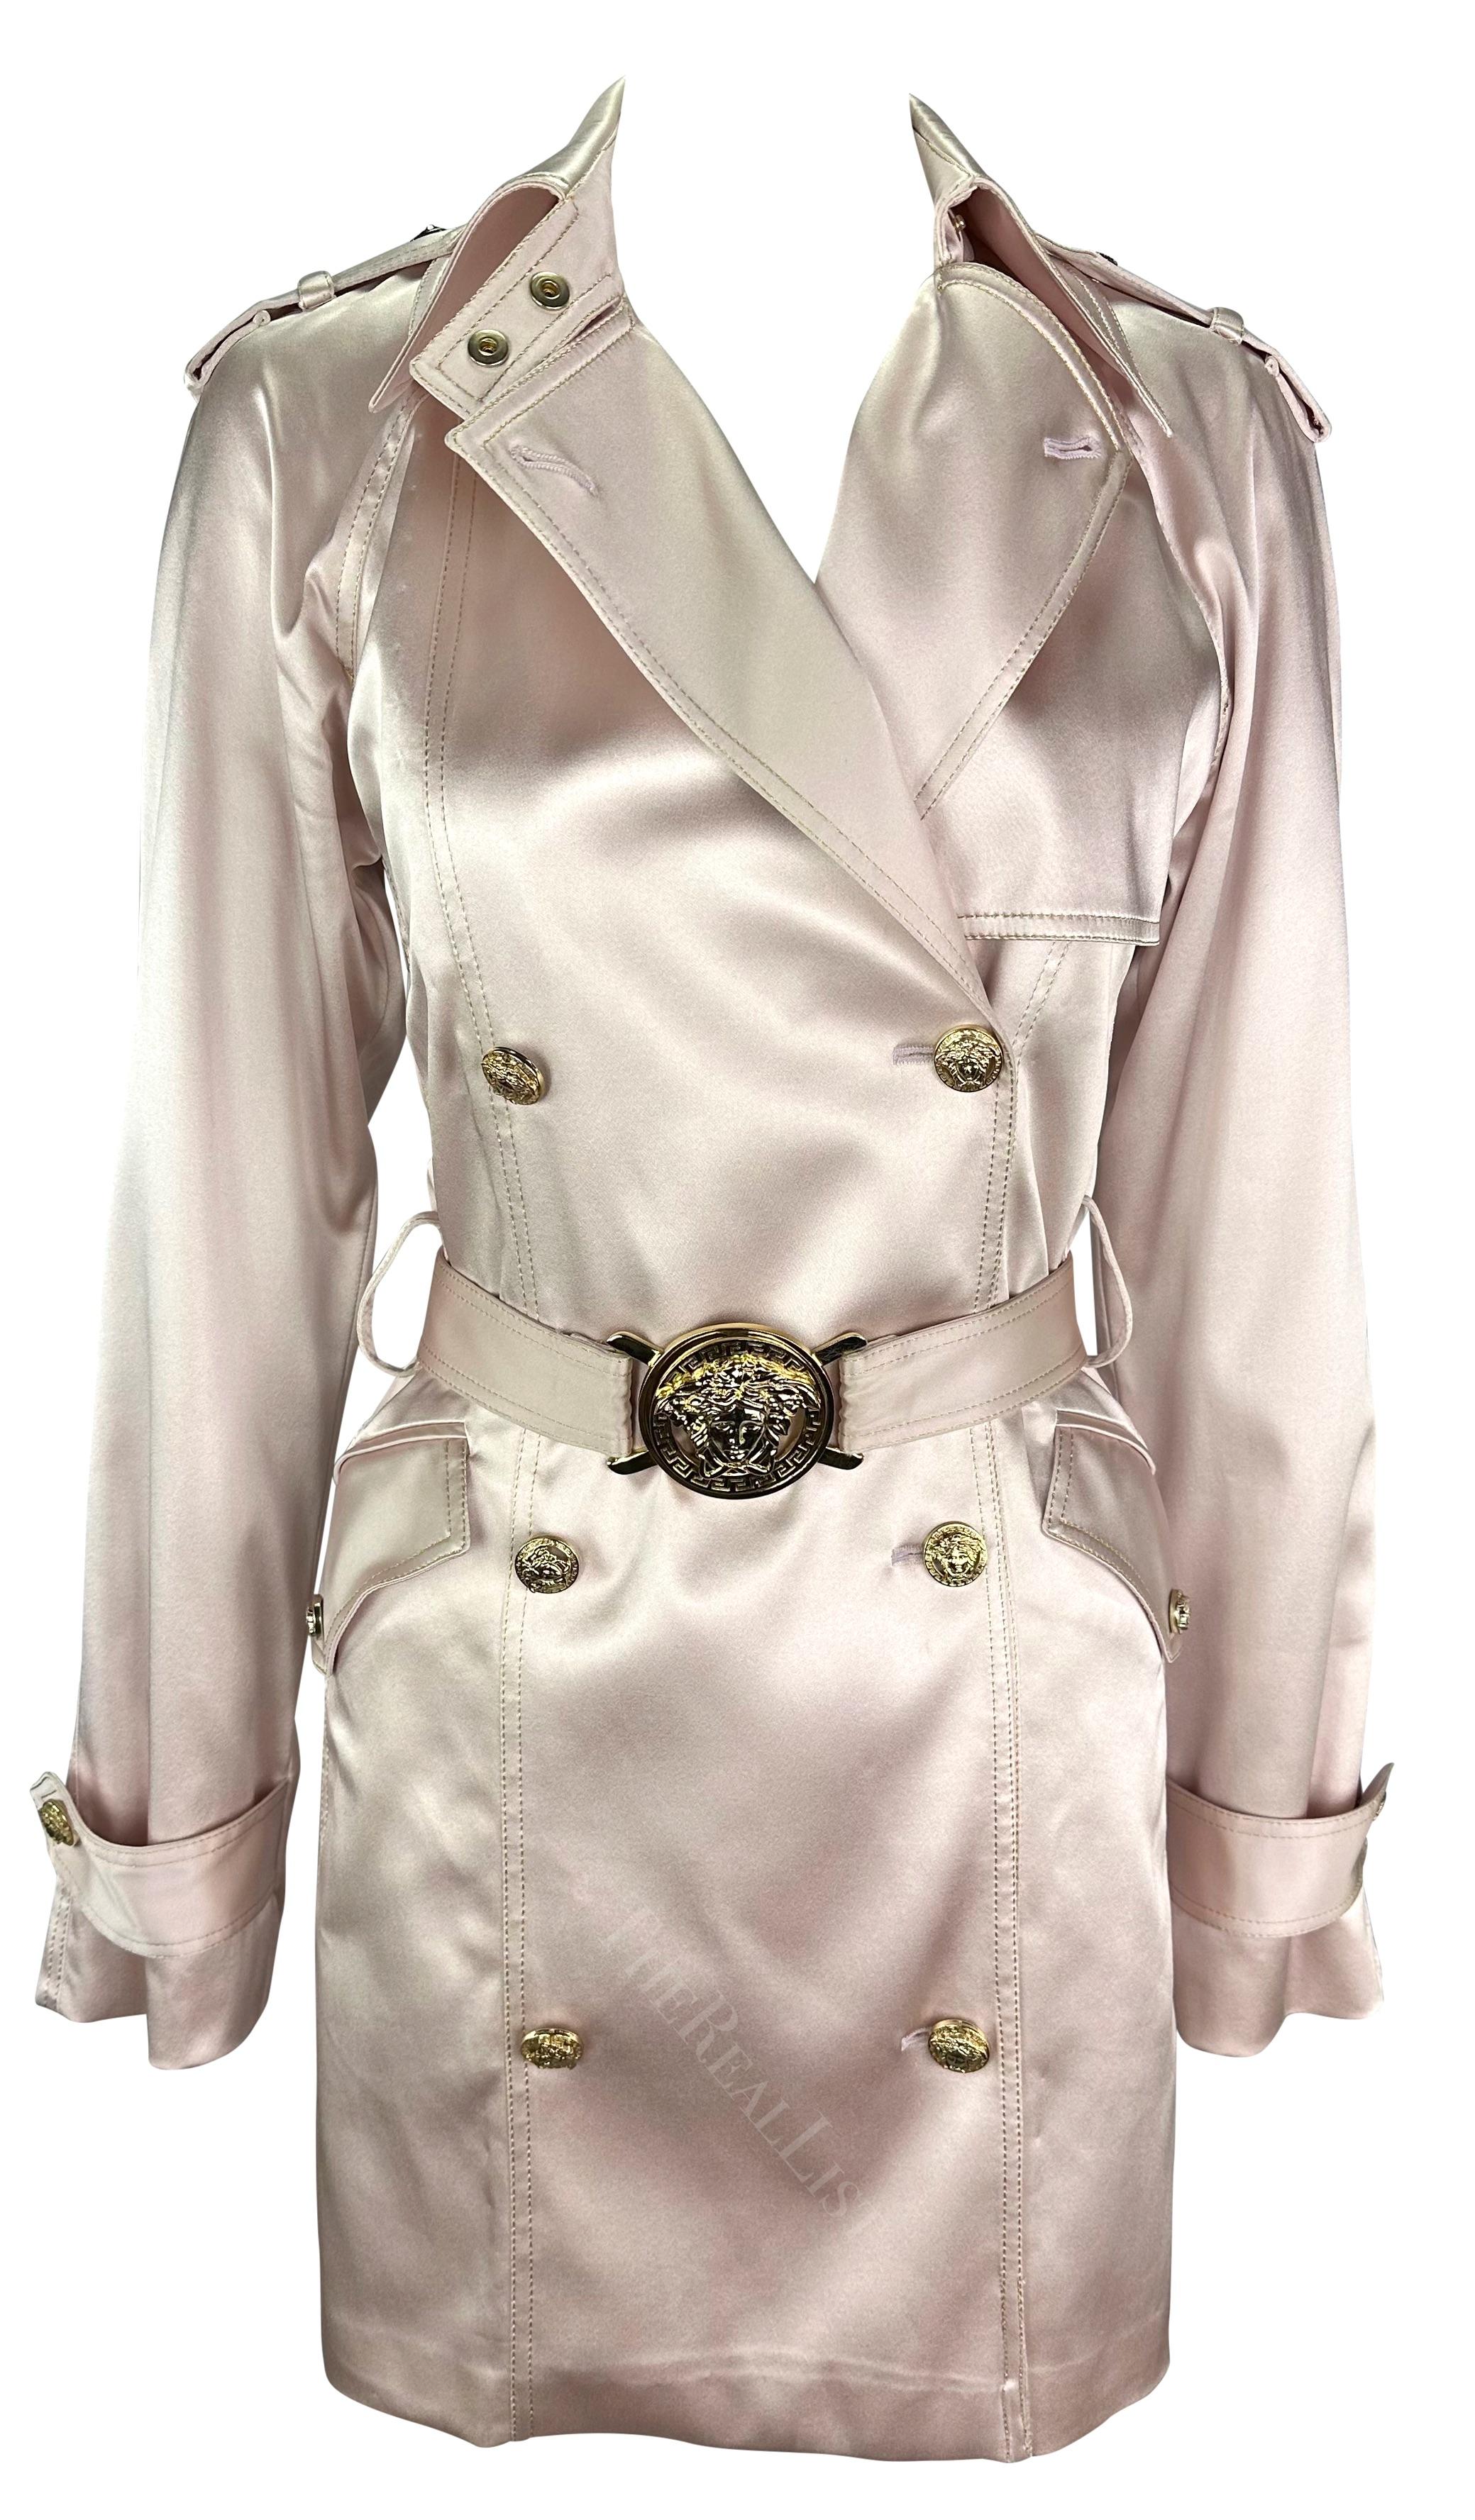 Ich präsentiere einen von Donatella Versace entworfenen Prototyp eines Versace-Doppelreihermantels aus hellrosa Satin. Dieser außergewöhnliche Mantel aus der Frühjahr/Sommer-Kollektion 2005 steht mit seinem glänzenden hellrosa Satin im Mittelpunkt.